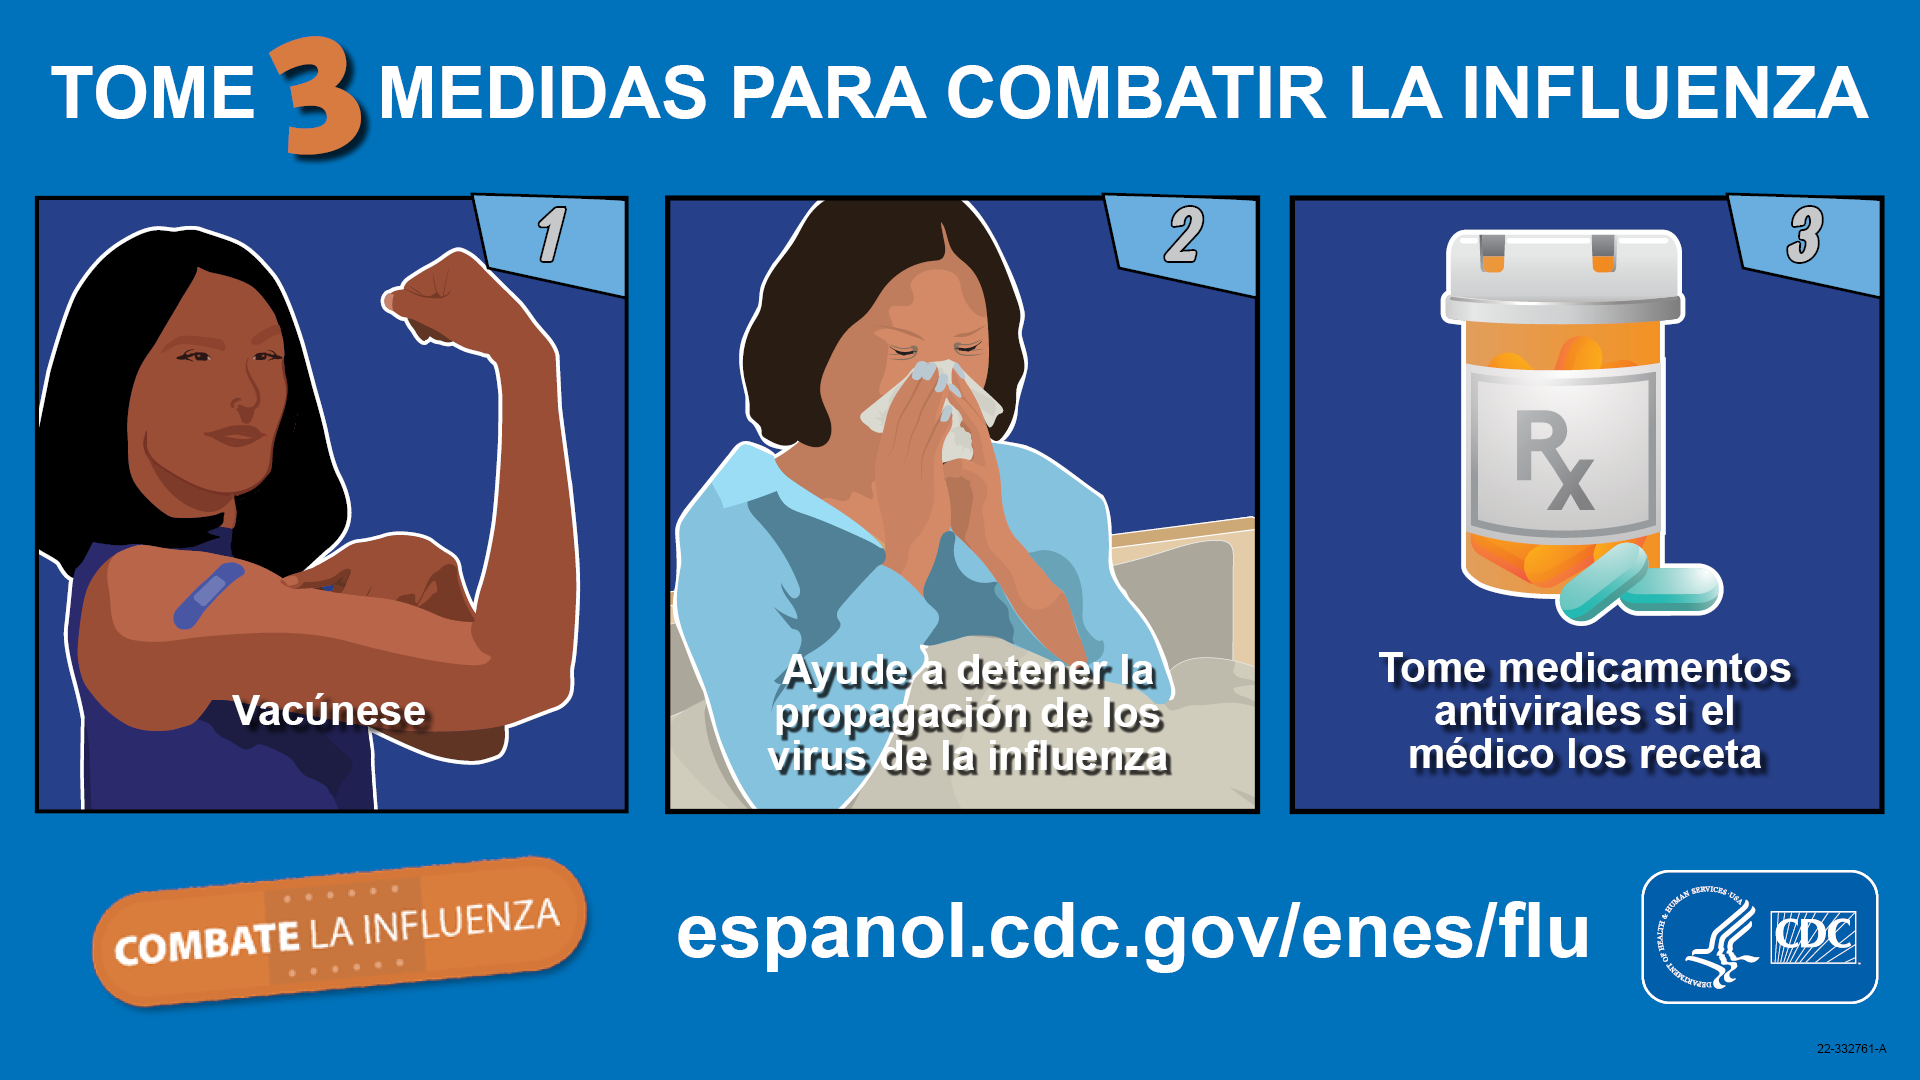 Tome 3 medidas para combatir la influenza